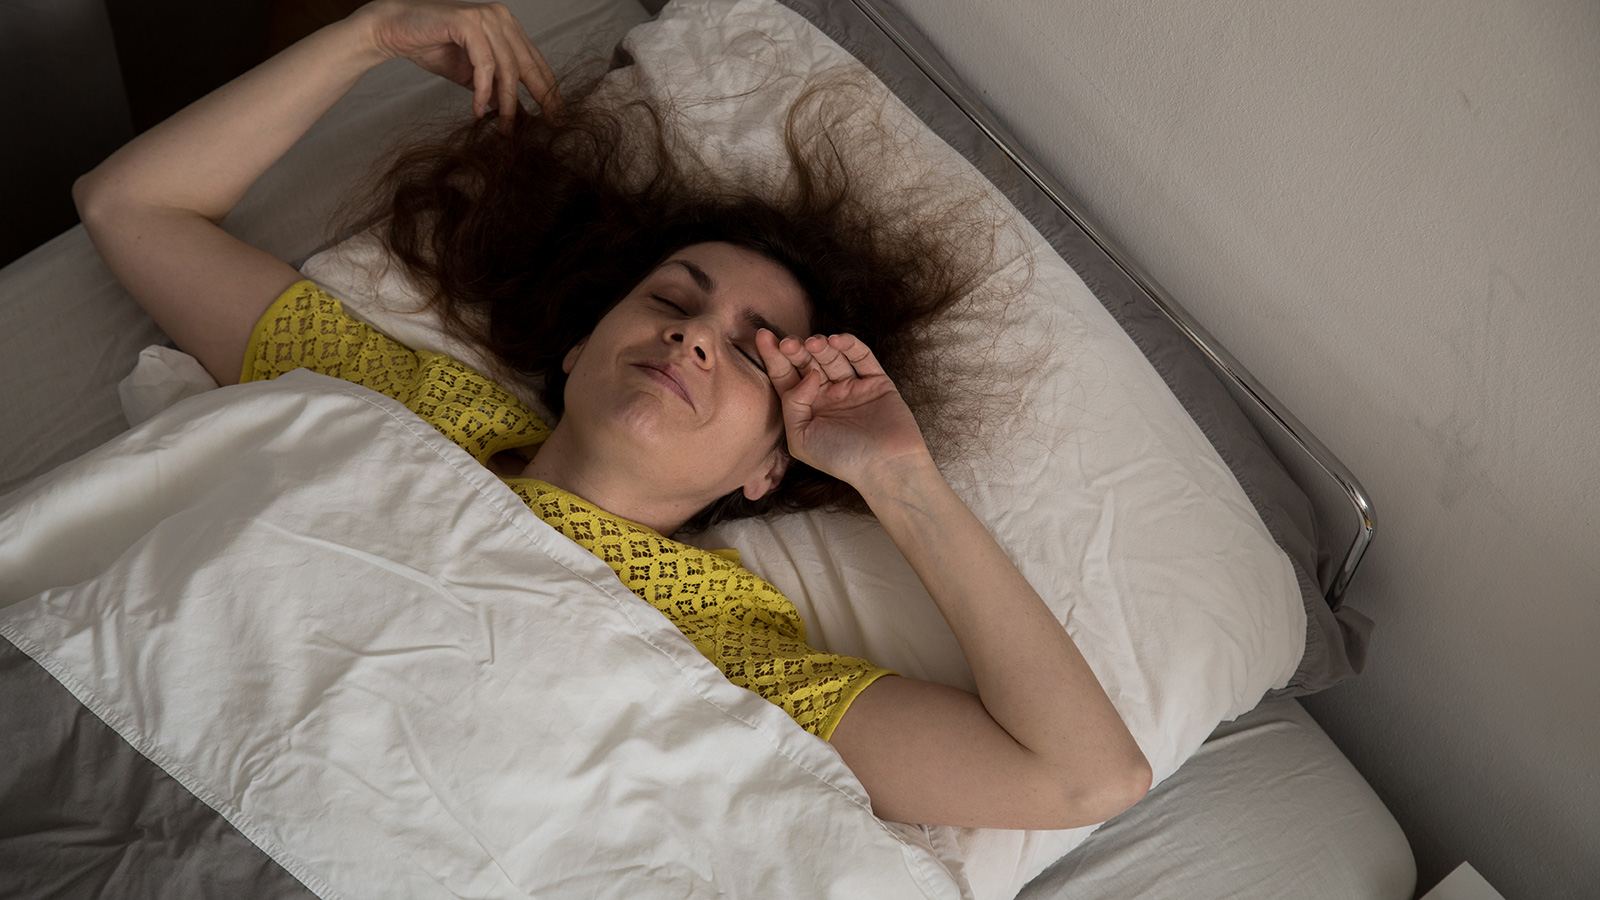 وقت النوم لدى الكثيرين يرتبط بوقت التفكير الزائد وجلد الذات (الألمانية)